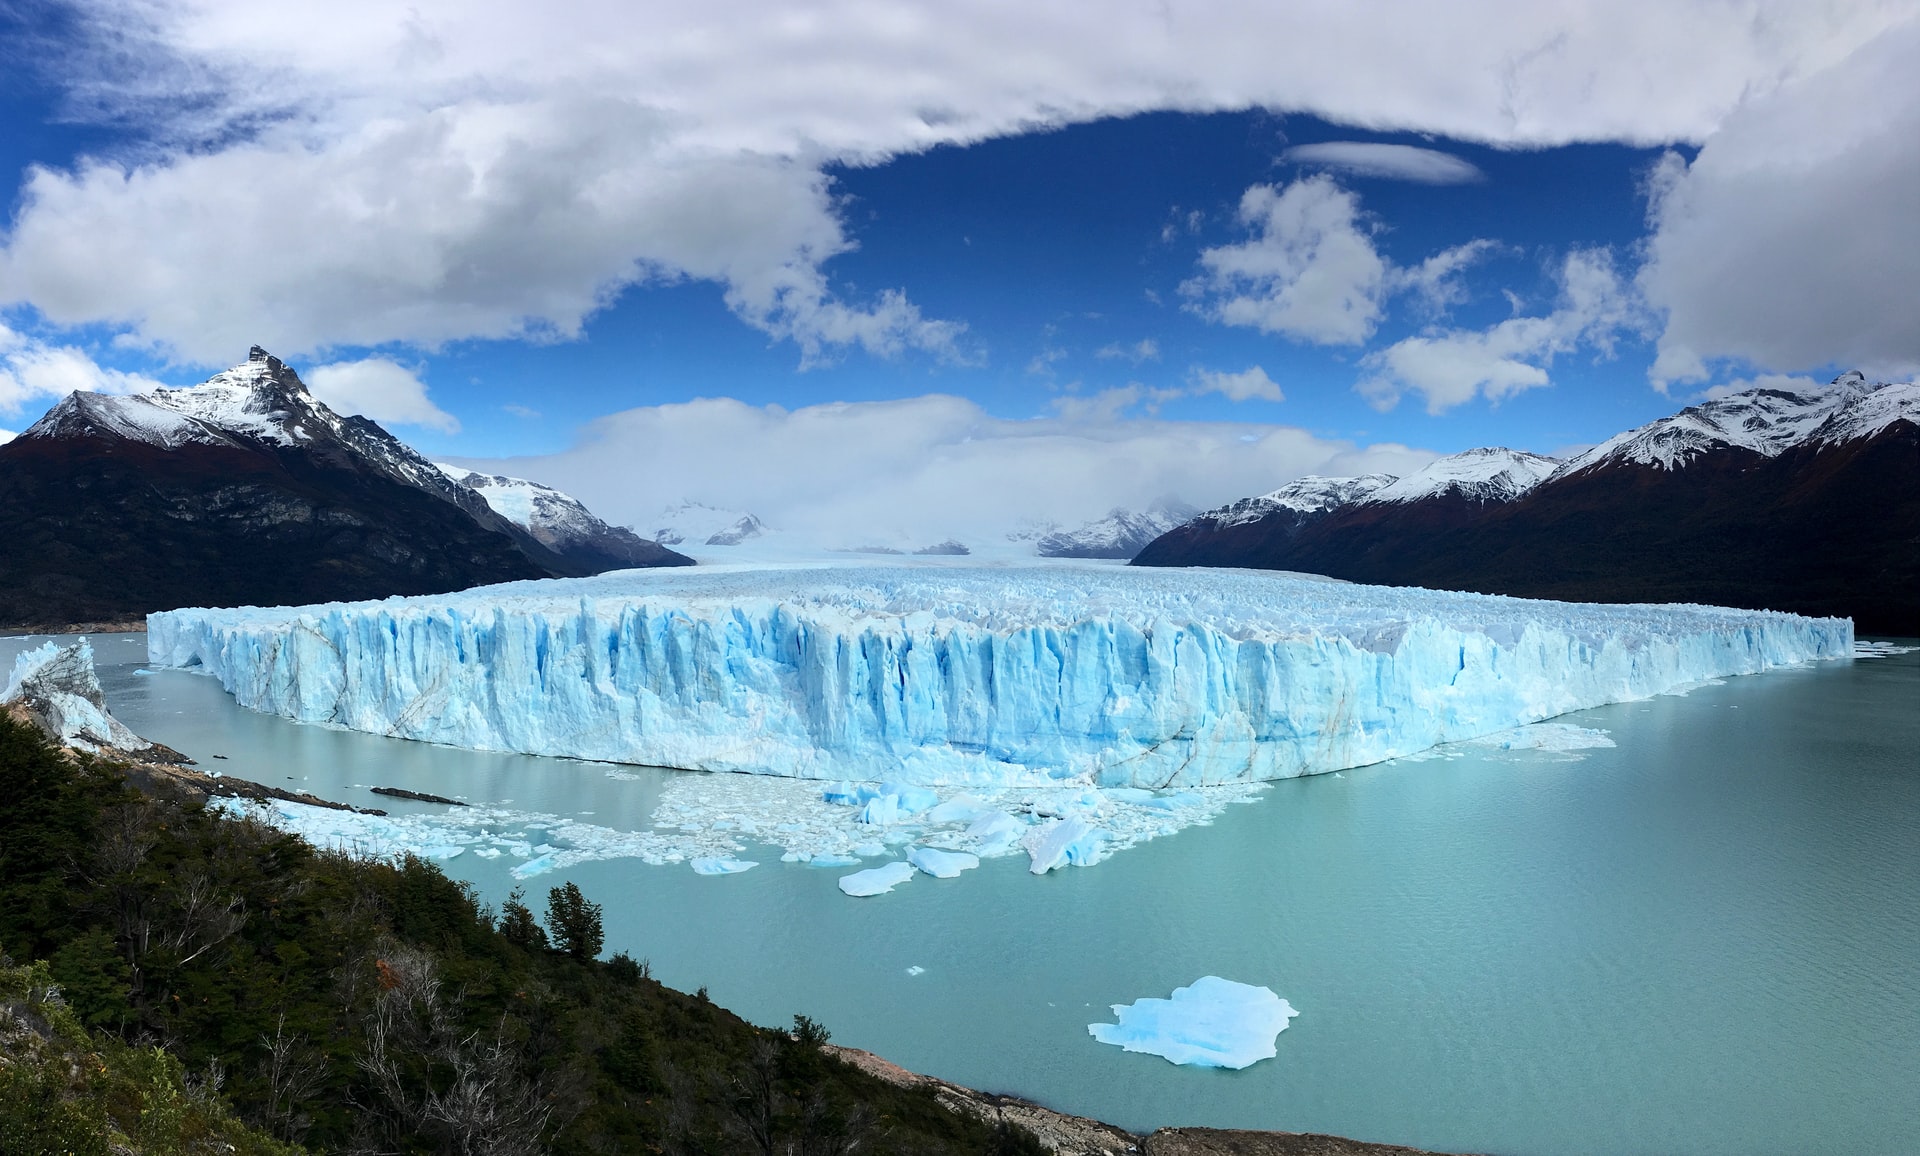 The incredible Perito Moreno Glacier in Argentina